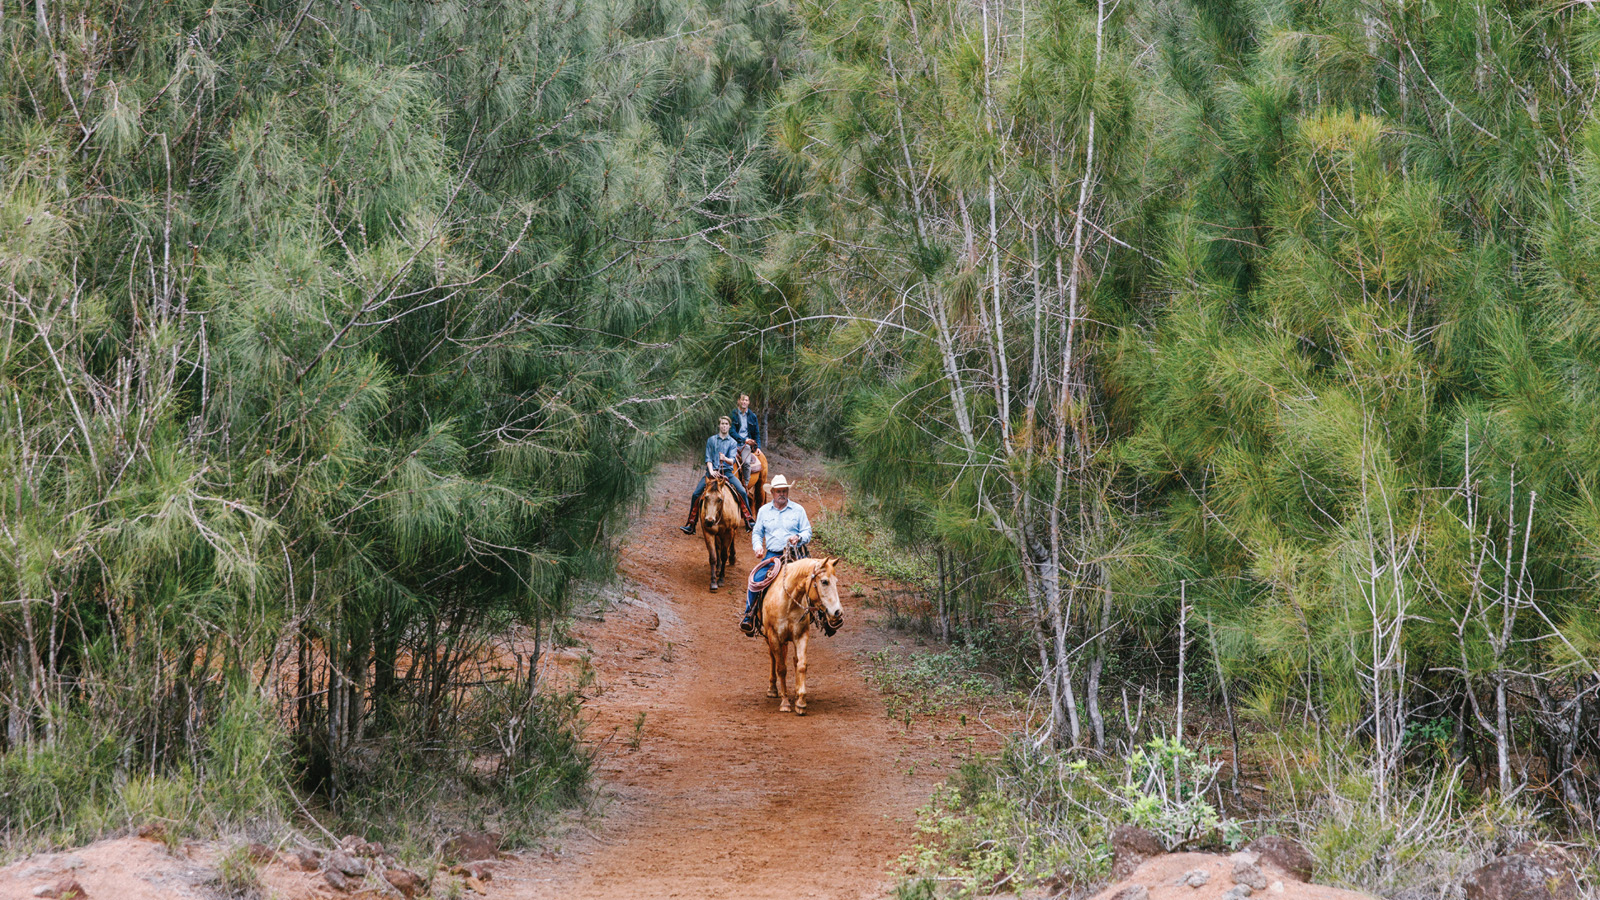 不论是骑马拜访旧时在拉奈岛高地上的牧场，又或是骑马漫步林间小径，都能感受到一种怀旧又奢华的旅行体验。